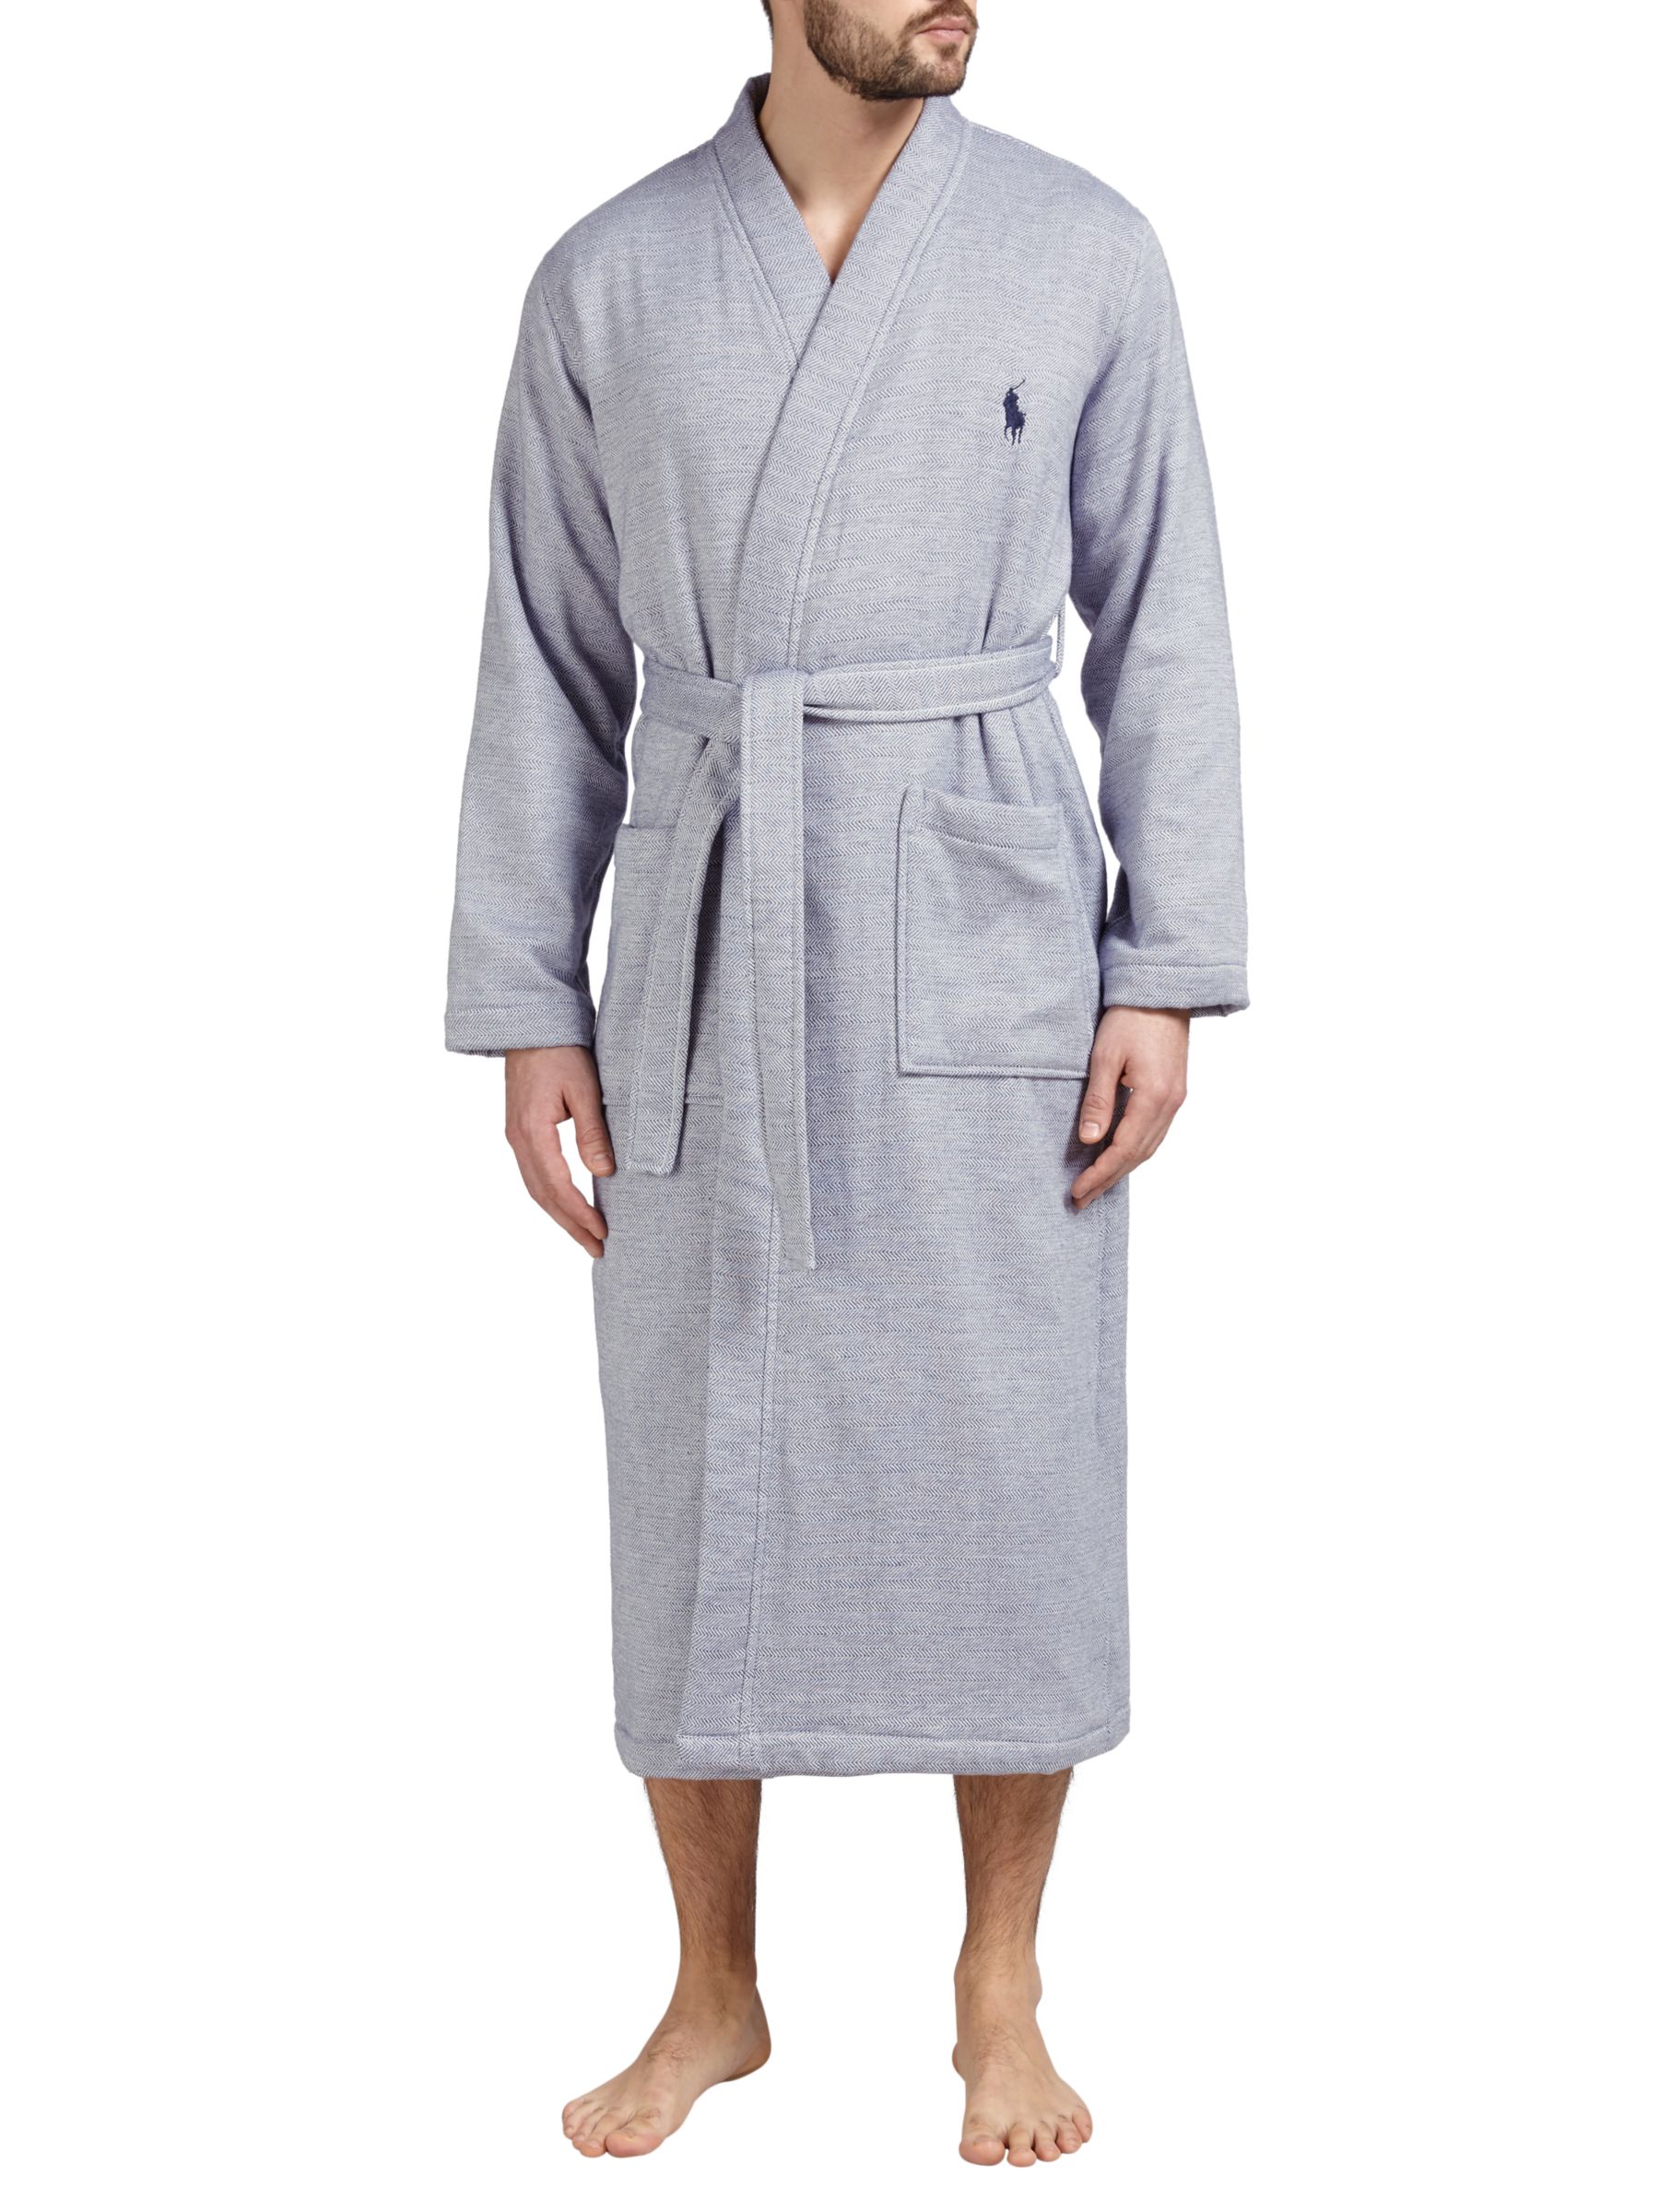 polo ralph lauren dressing gown